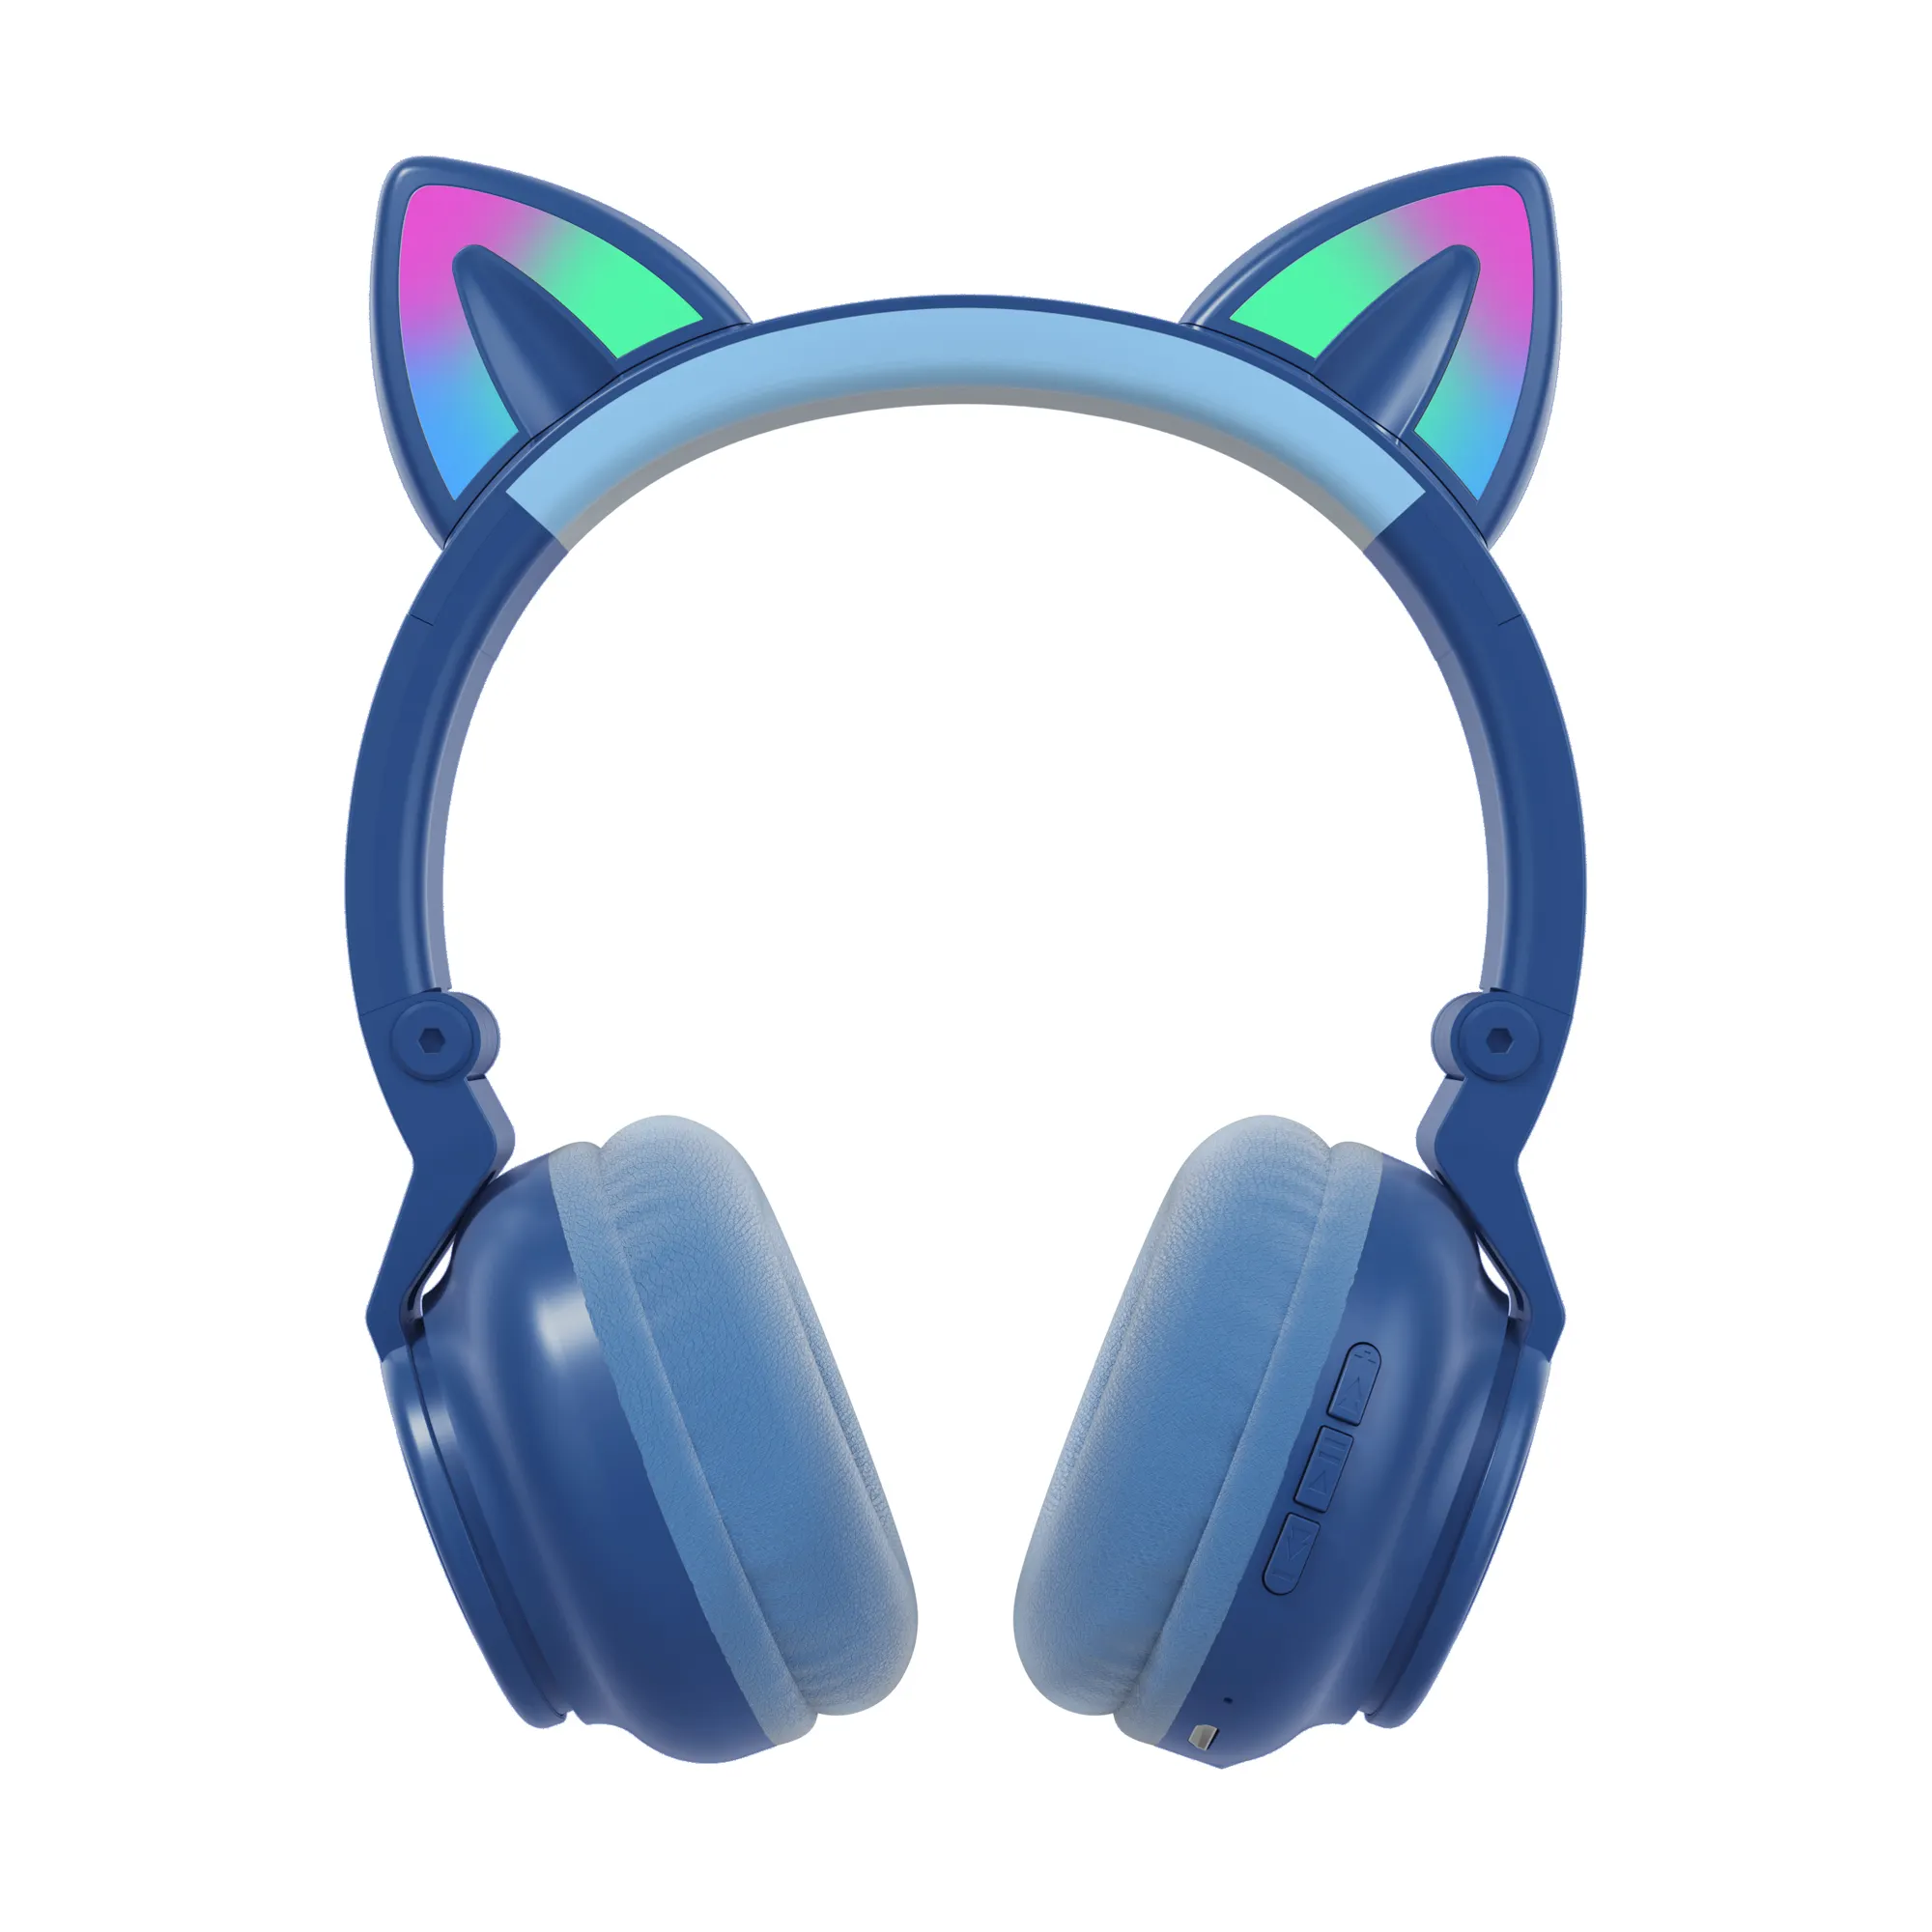 2021 New Trending Led Lights Foldable Gaming Headset Bt 5.0 Wireless Cat Ear Headphones